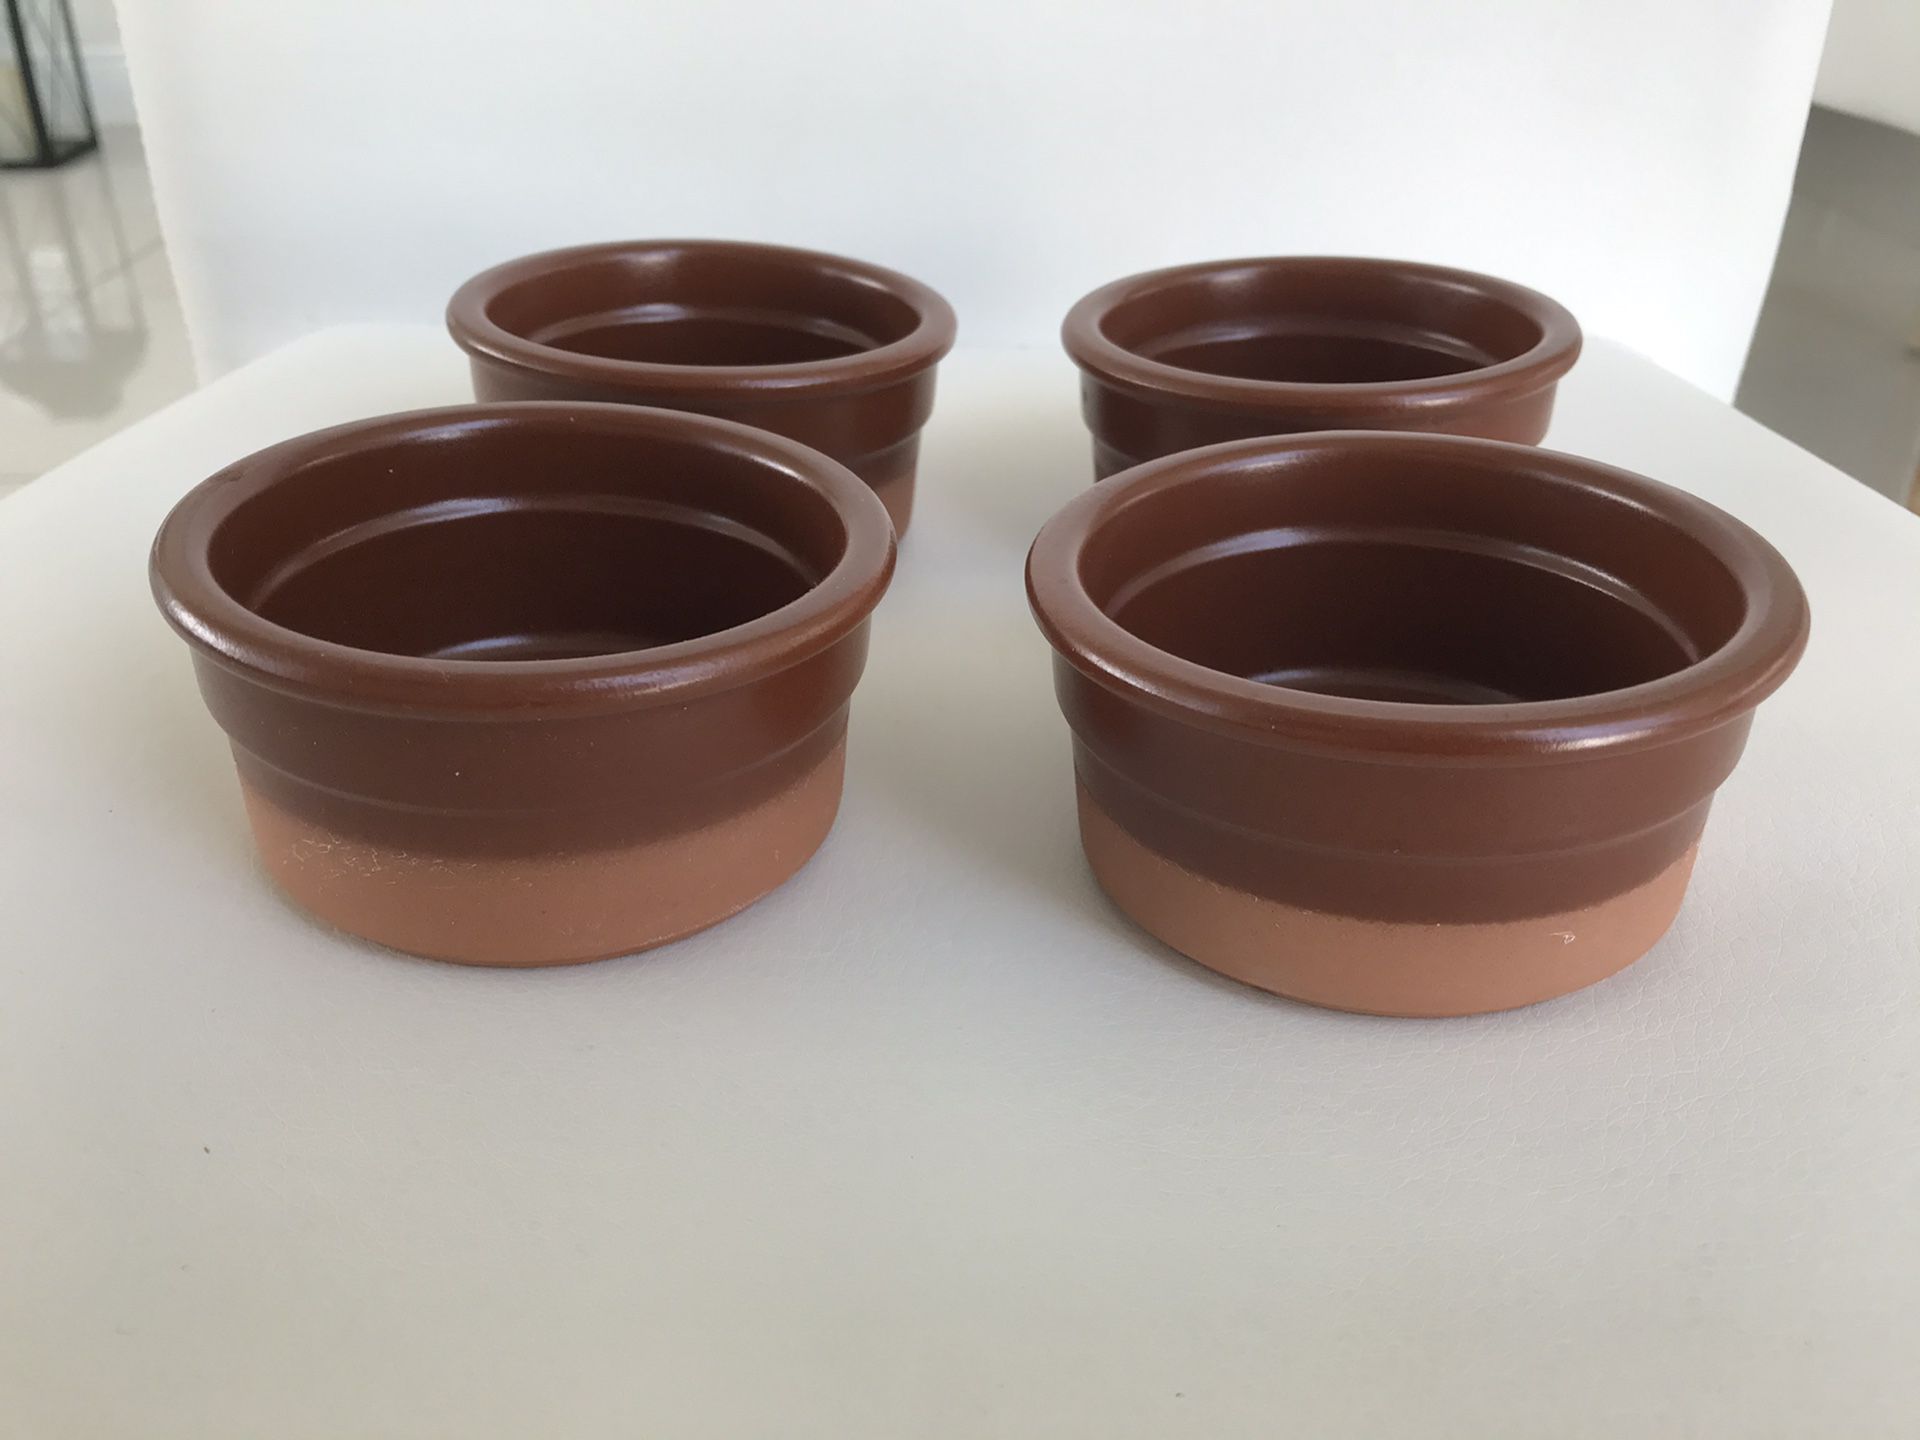 Bakeware/pots set of 4 - 3.5” x 2”